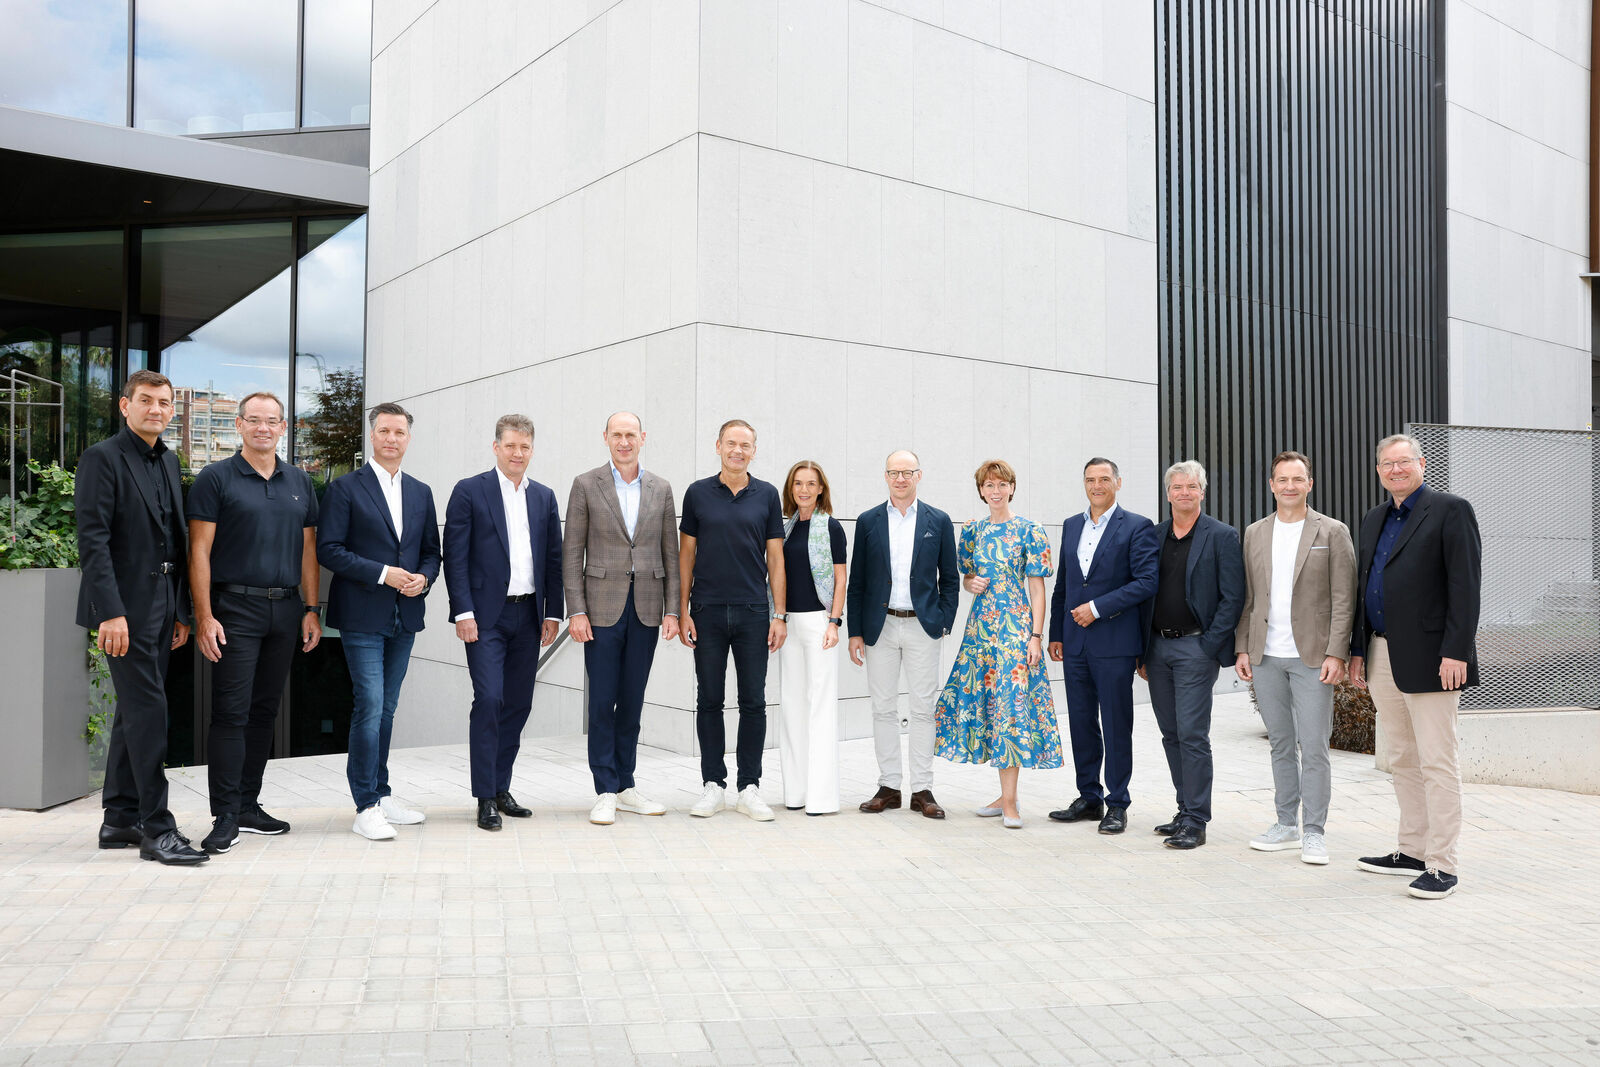 Erweiterter Vorstand der Volkswagen Group: Gruppe von Menschen steht nebeneinander vor einem Gebäude